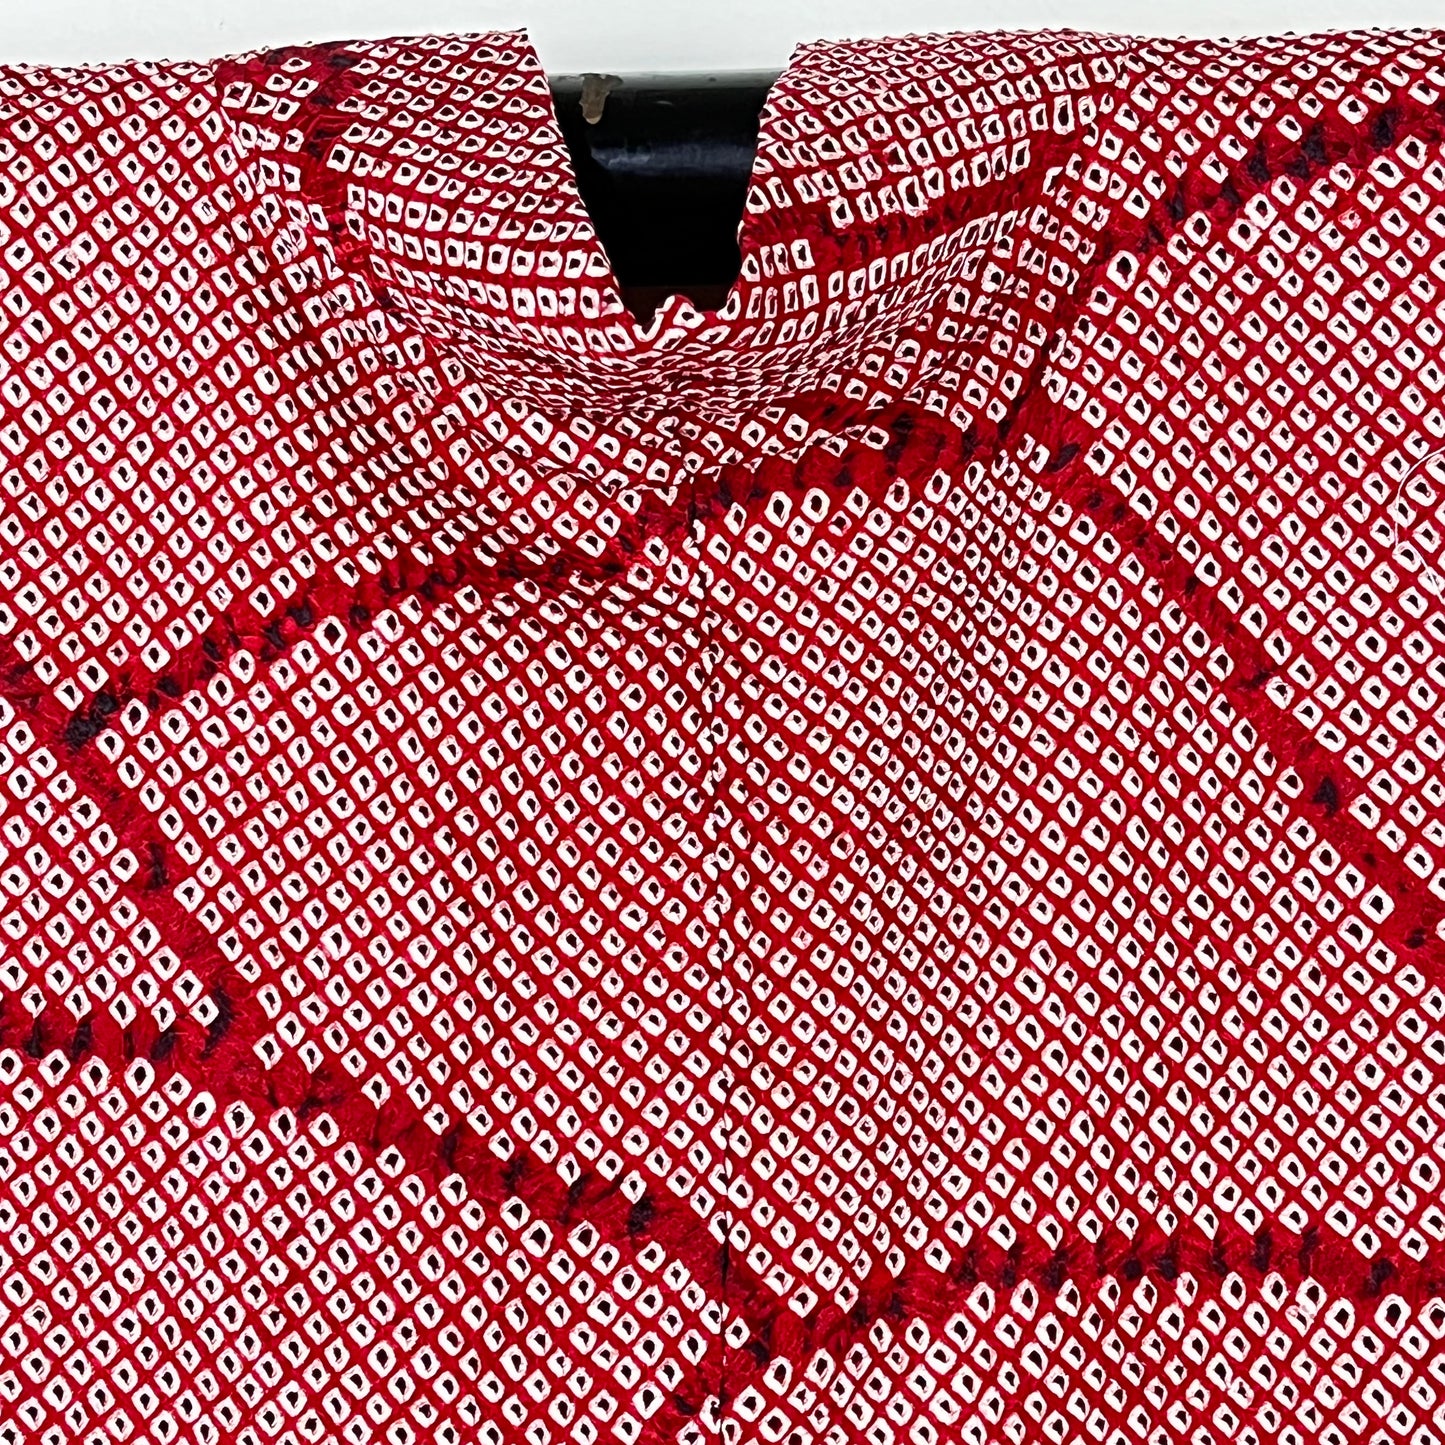 Vintage Japanese Silk Haori Coat in Shibori Tie-dye Bright Red Fan Pattern 28"L